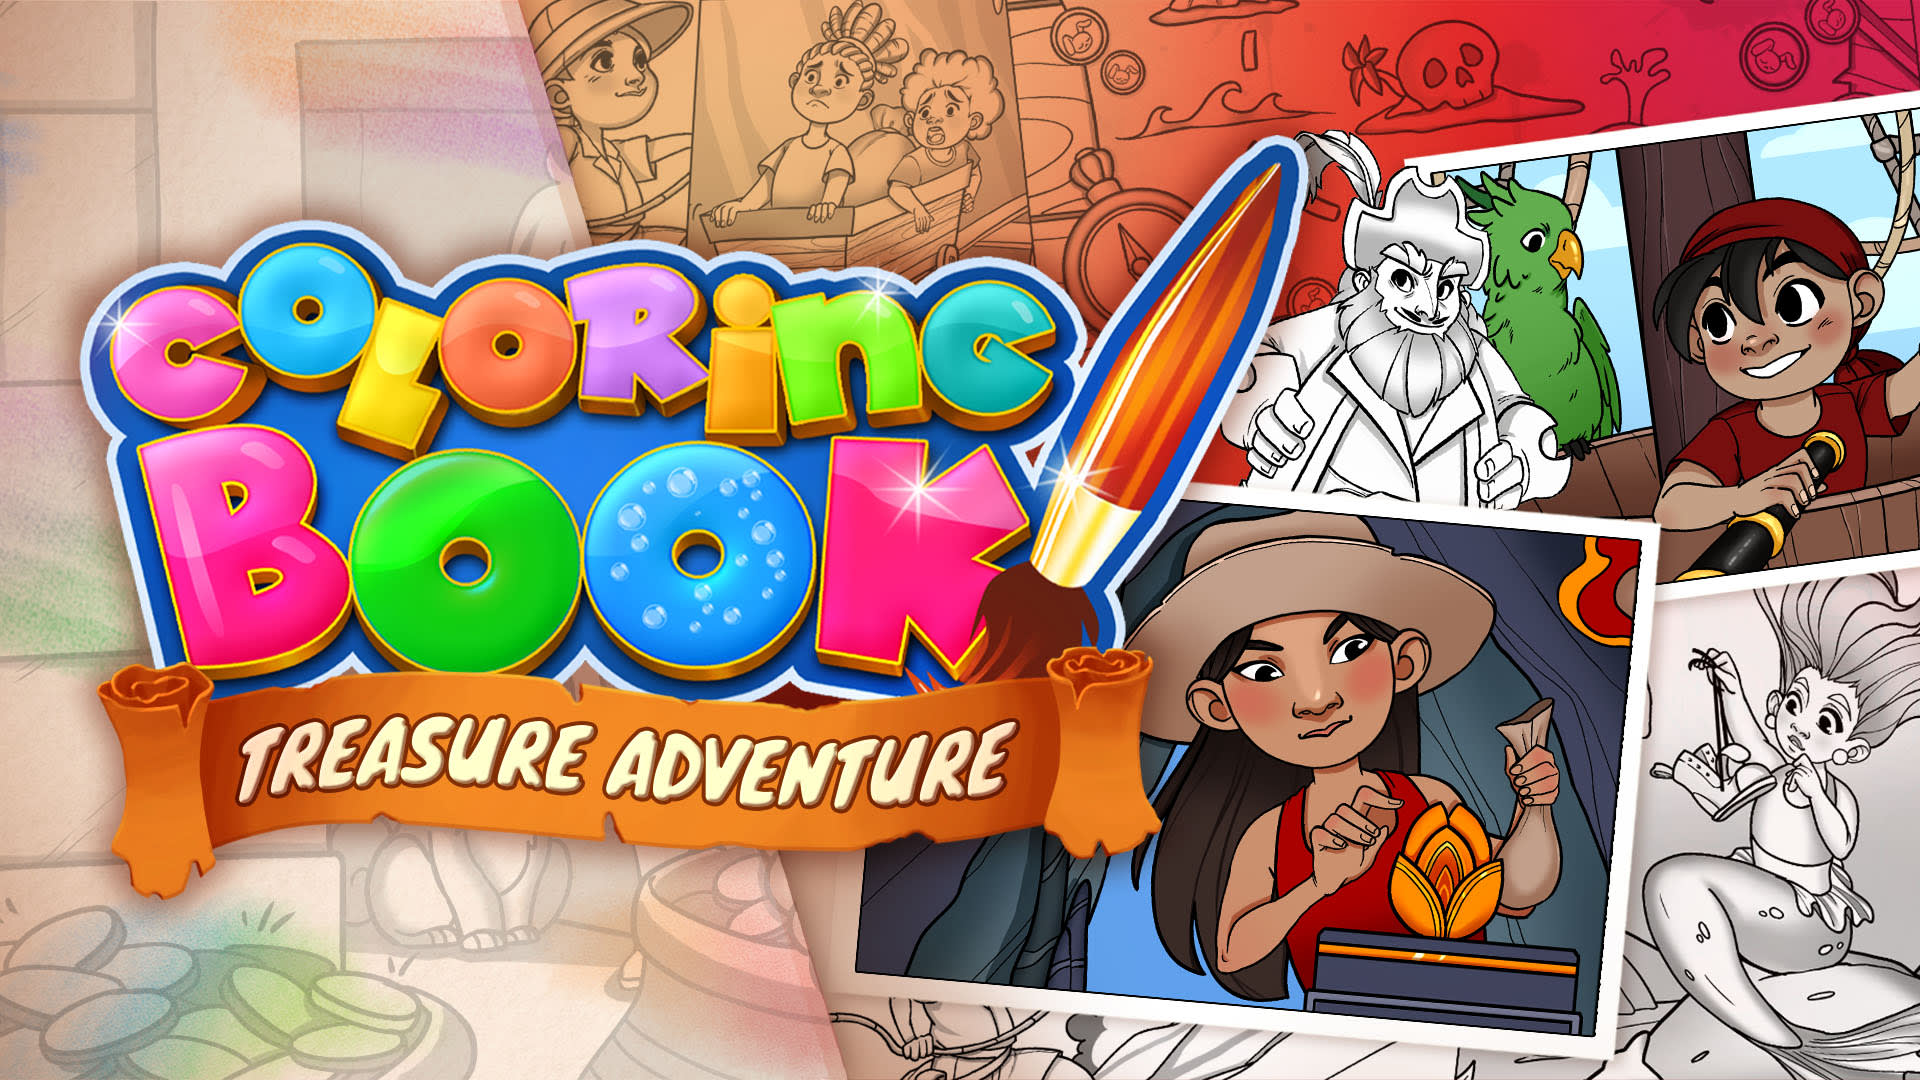 Coloring Book: Treasure Adventure - 29 drawings